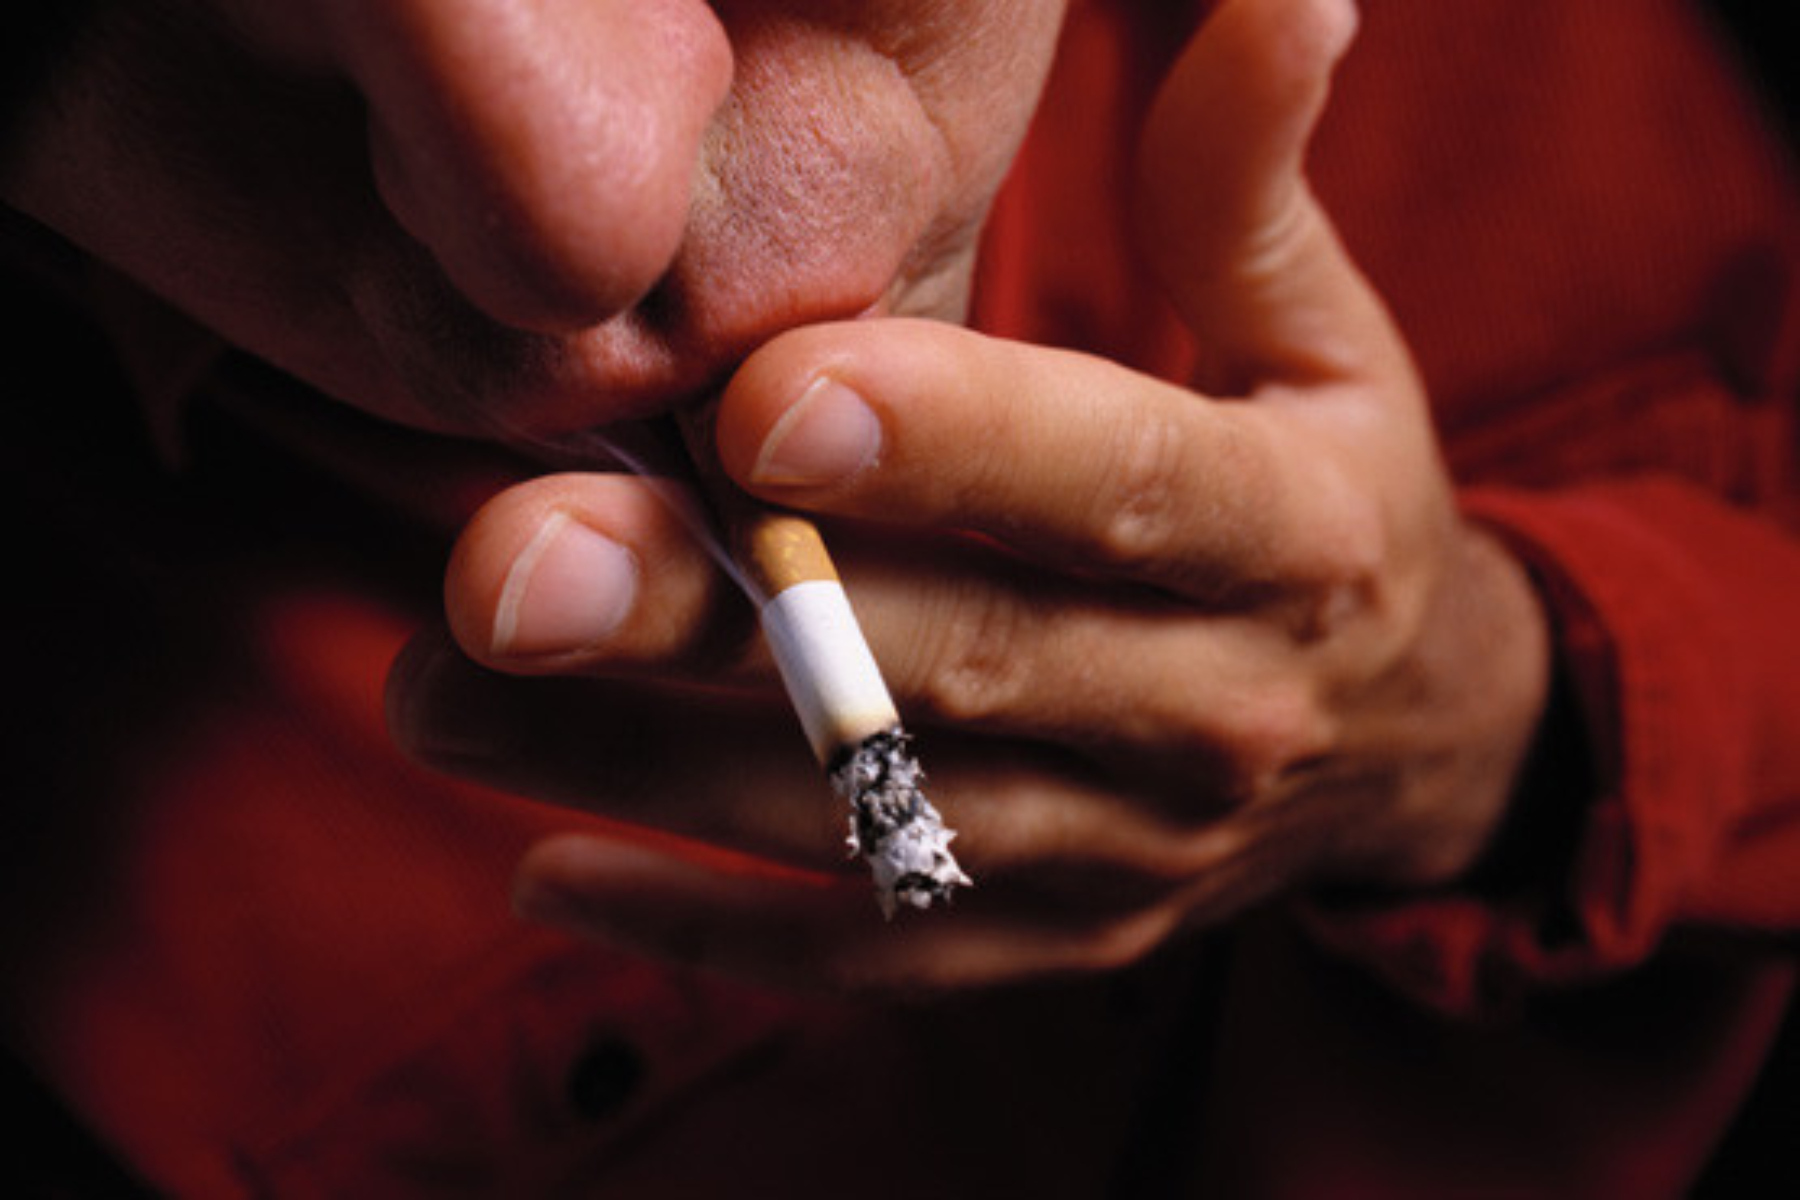 Καρκίνος κάπνισμα: Πώς το κάπνισμα συνδέεται με την εμφάνιση καρκίνου;